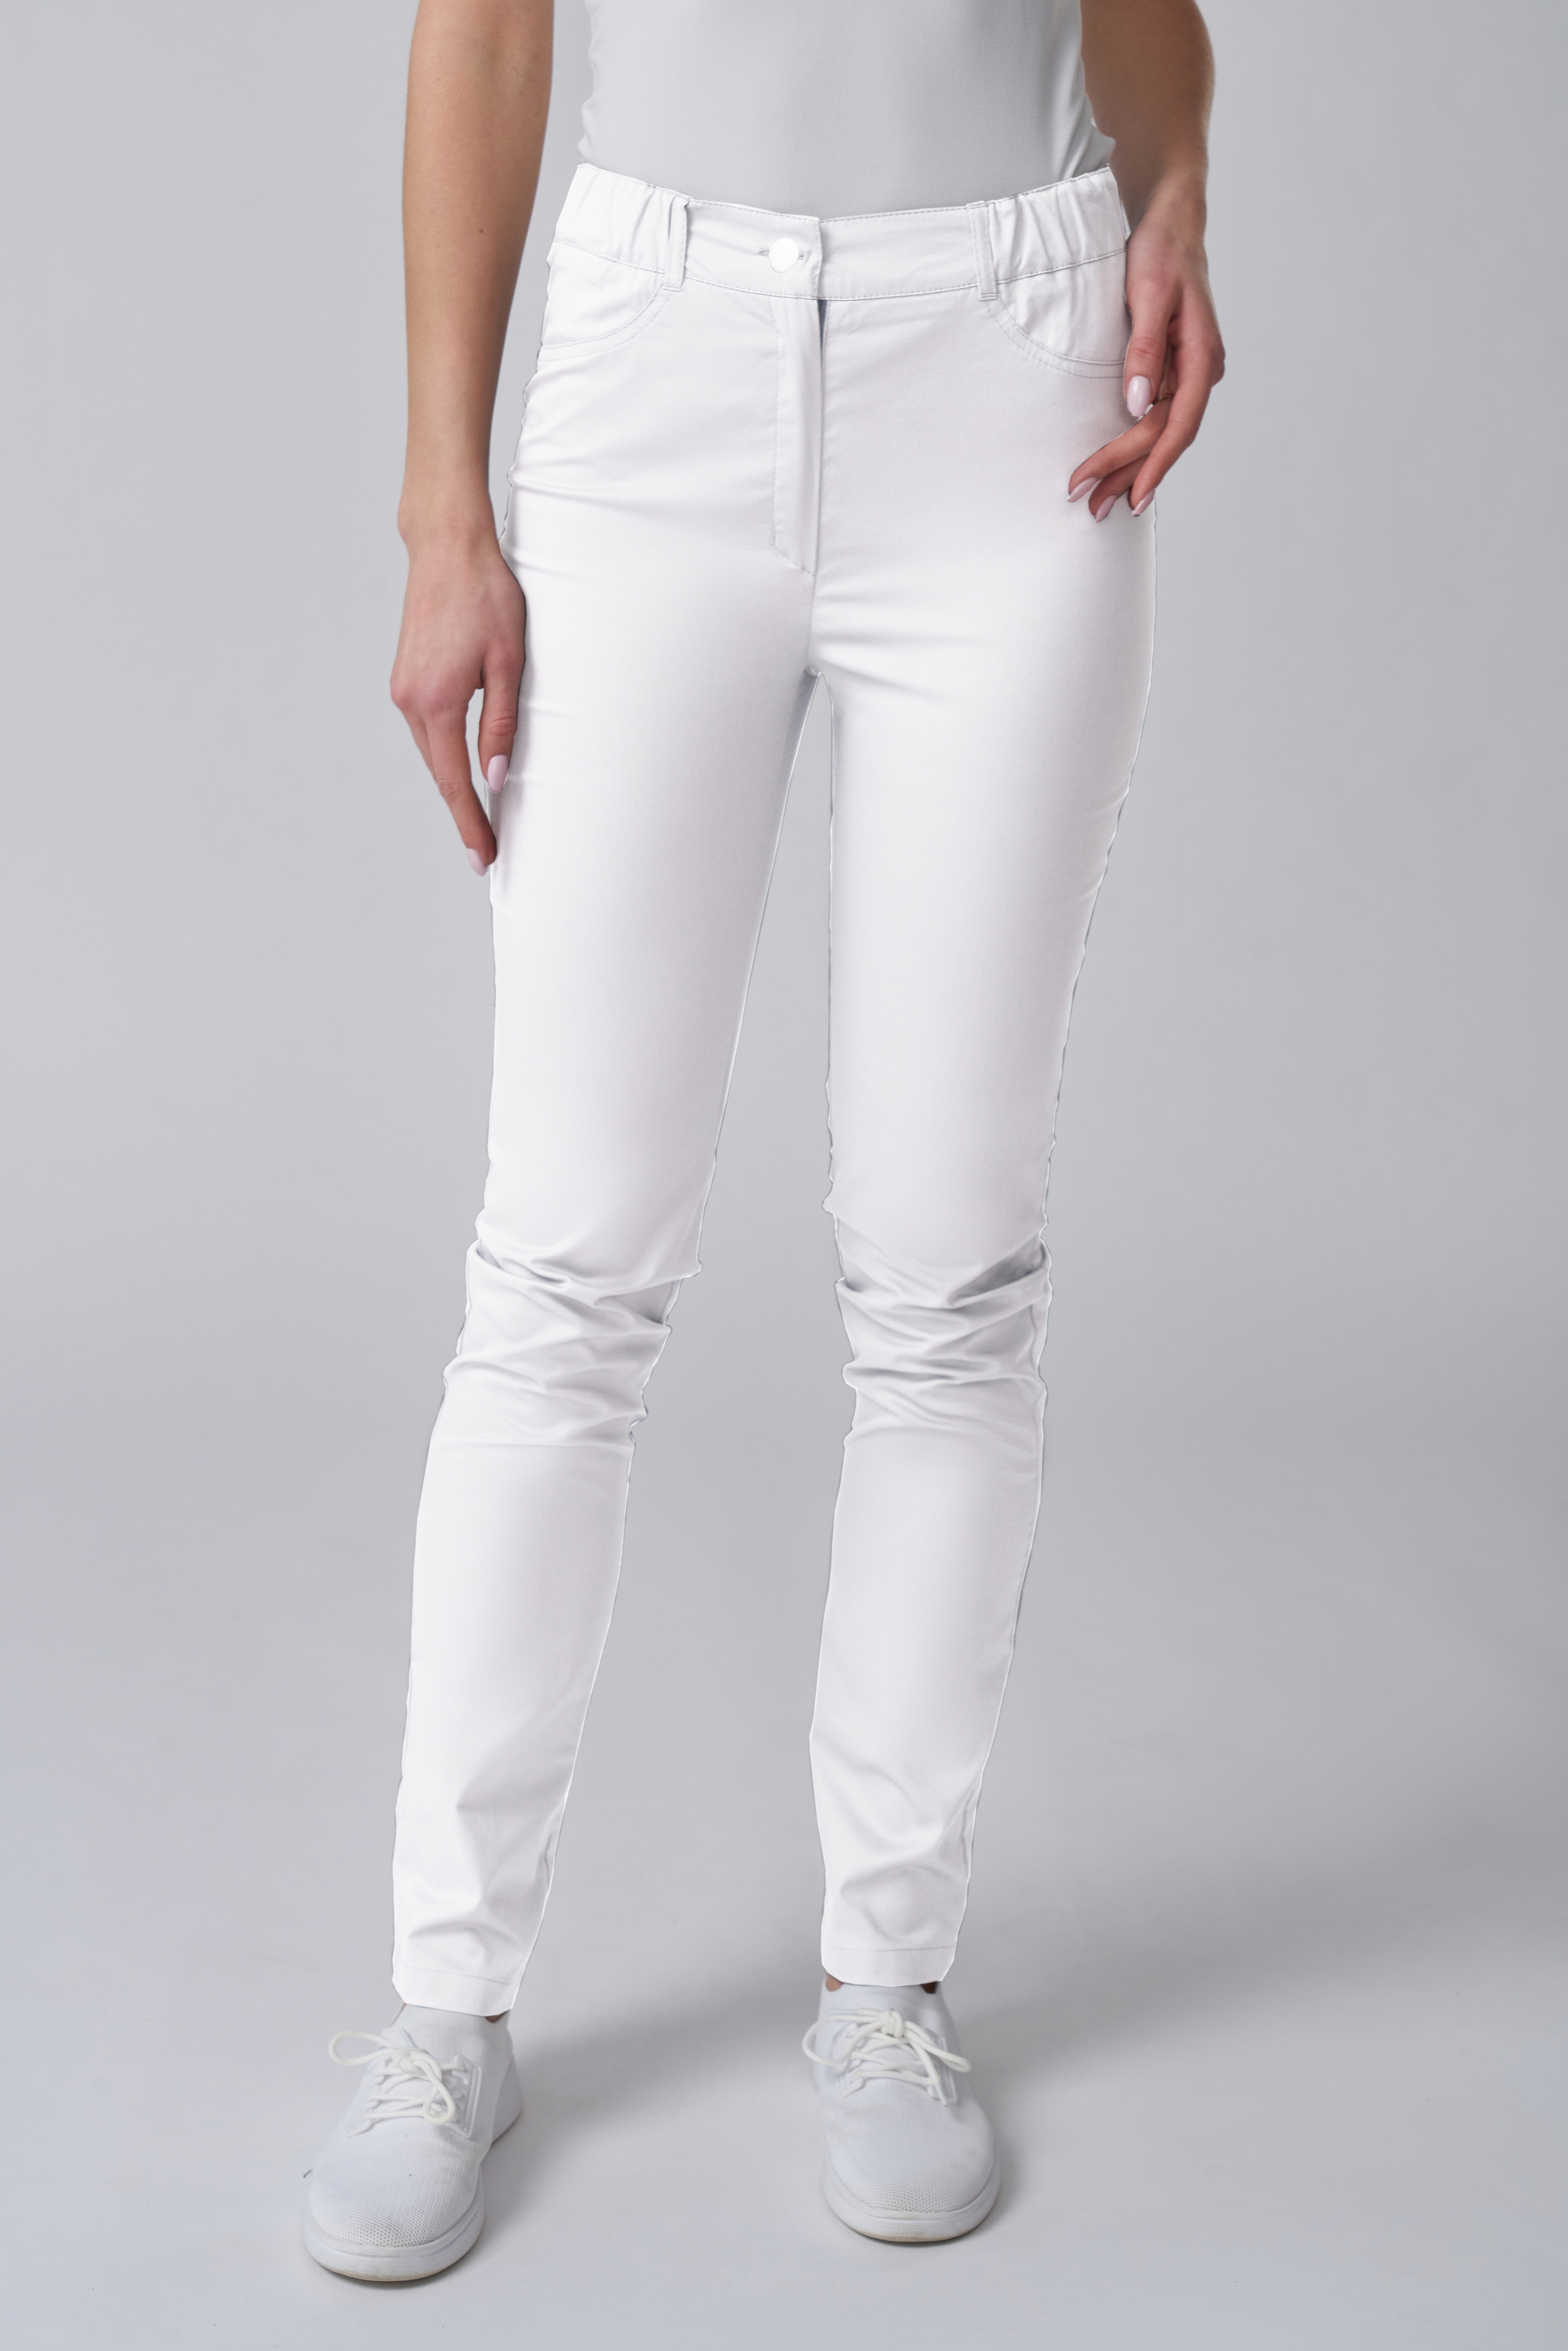 Белые брюки стрейч женские